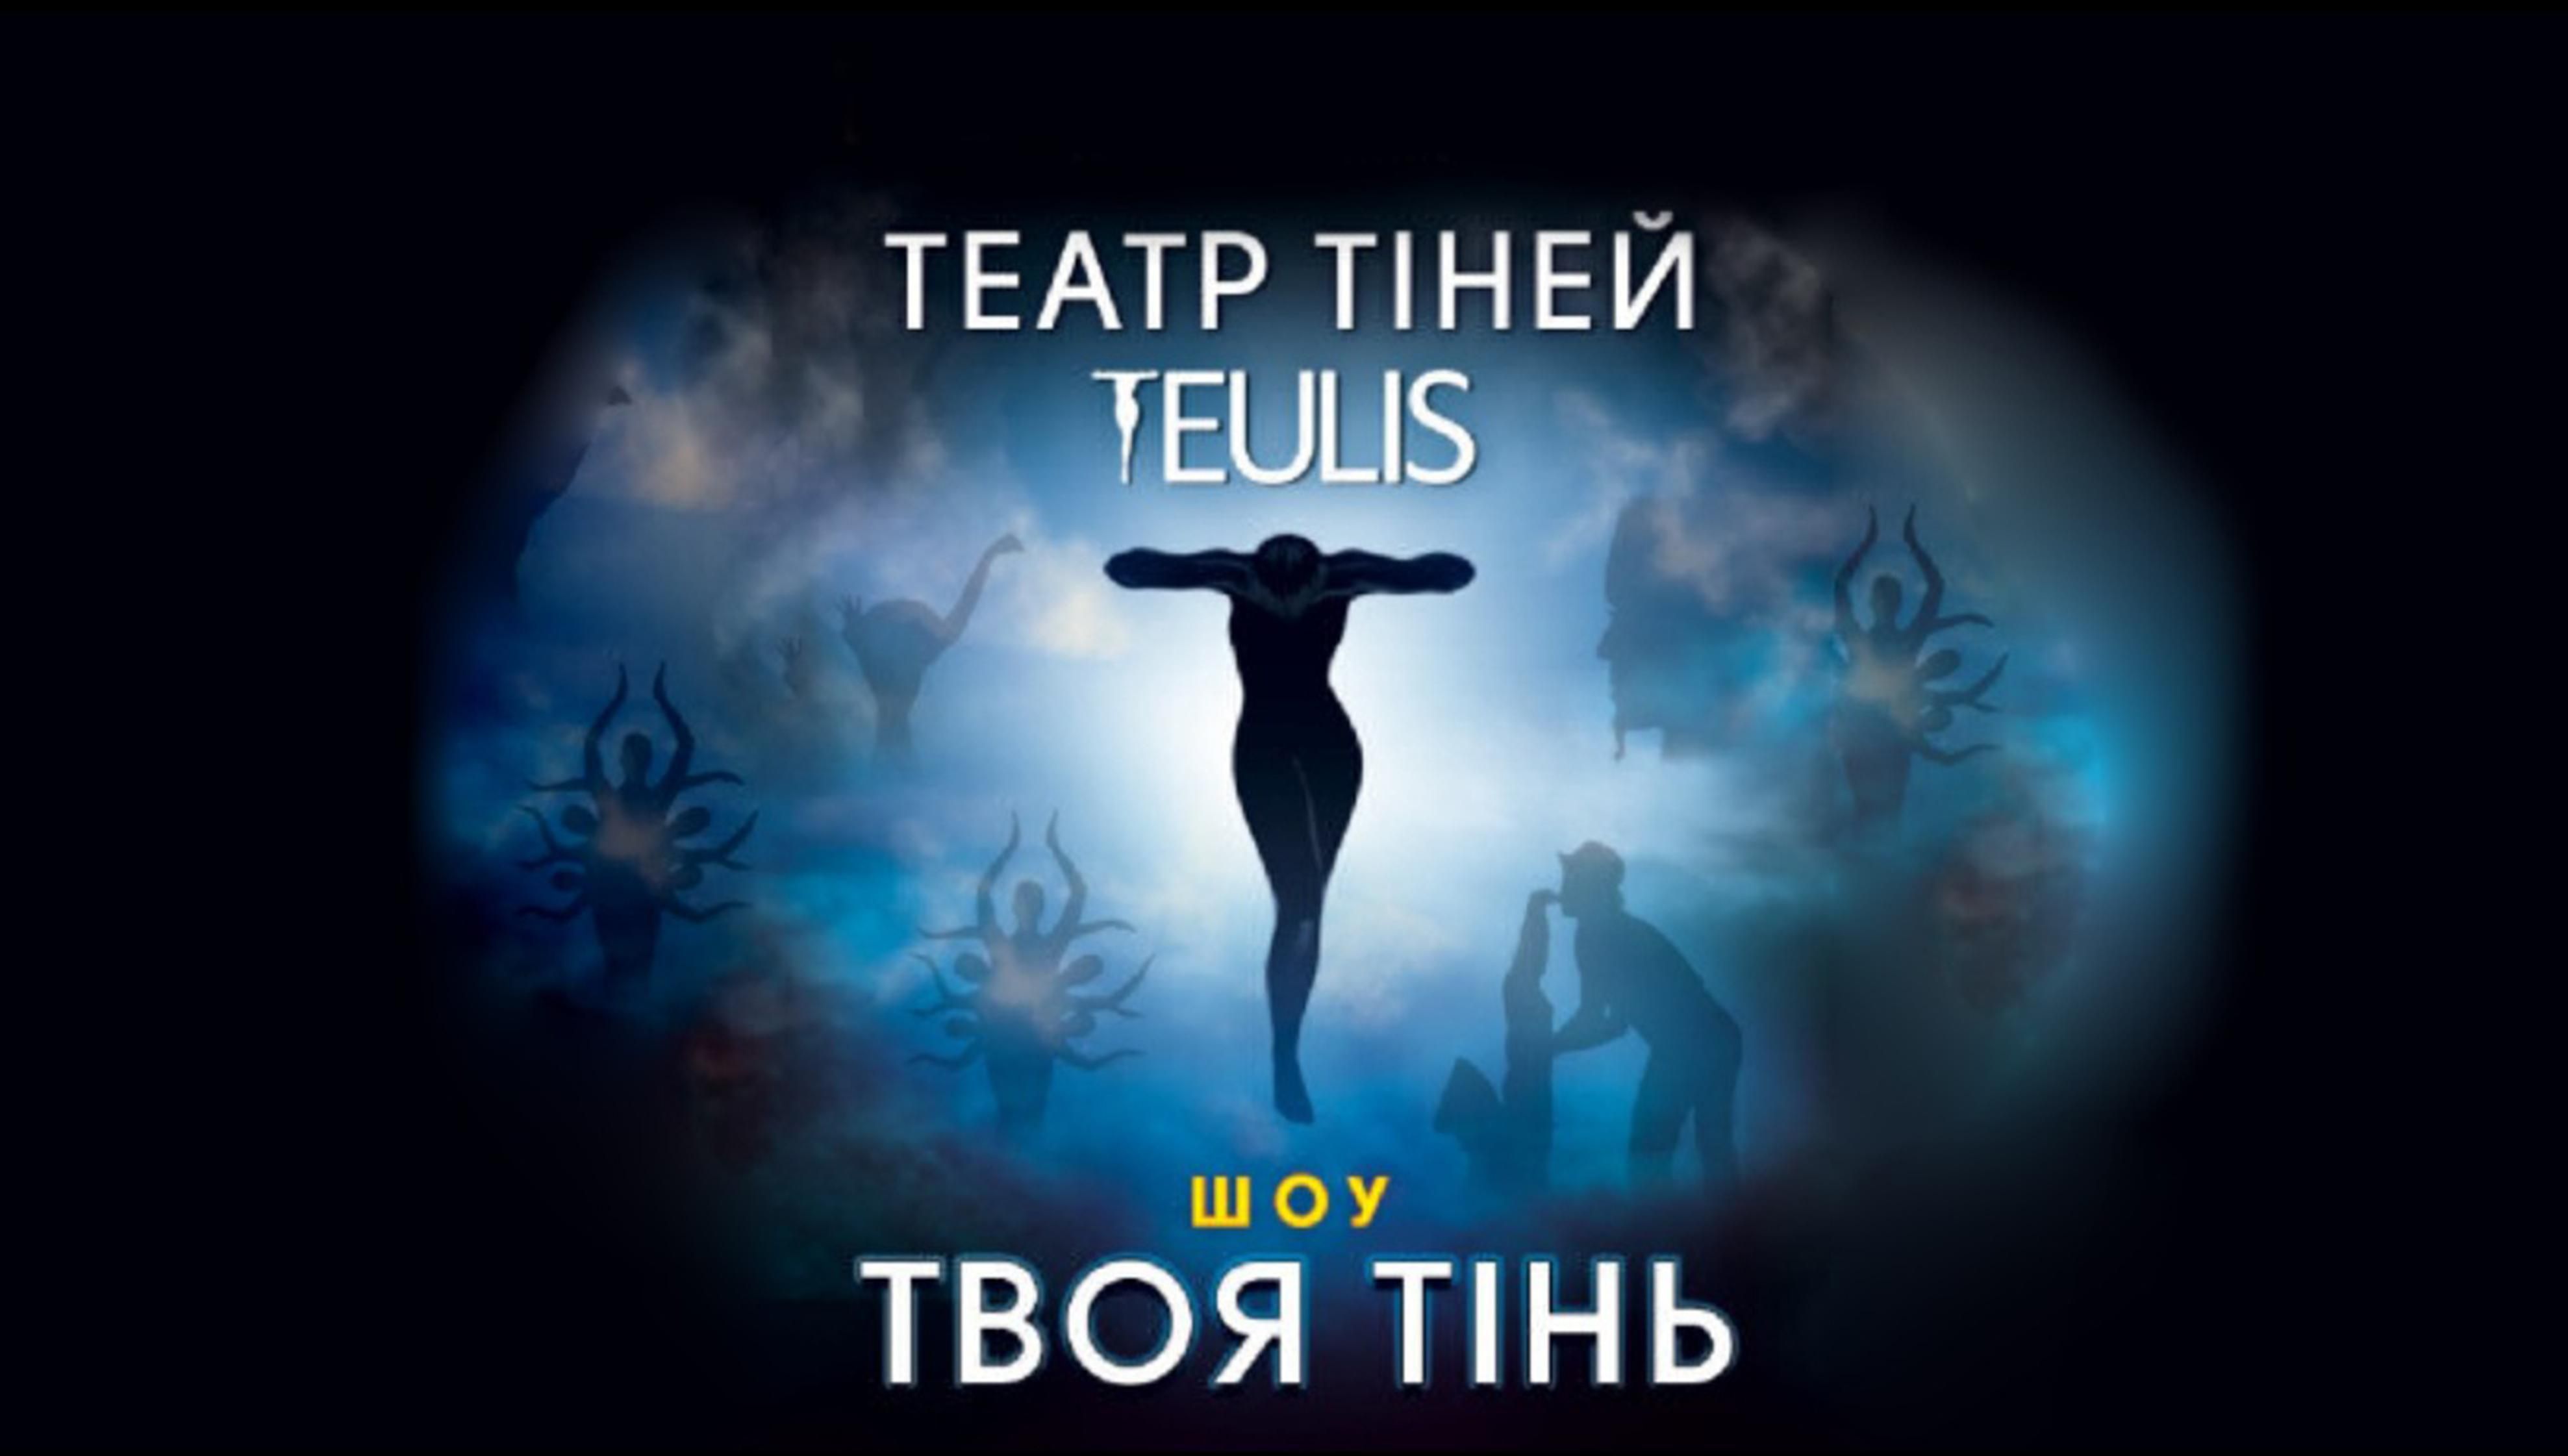 Невероятная история без единого слова: всеукраинский тур театра теней Teulis с шоу "Твоя тень" - Украина новости - Афиша